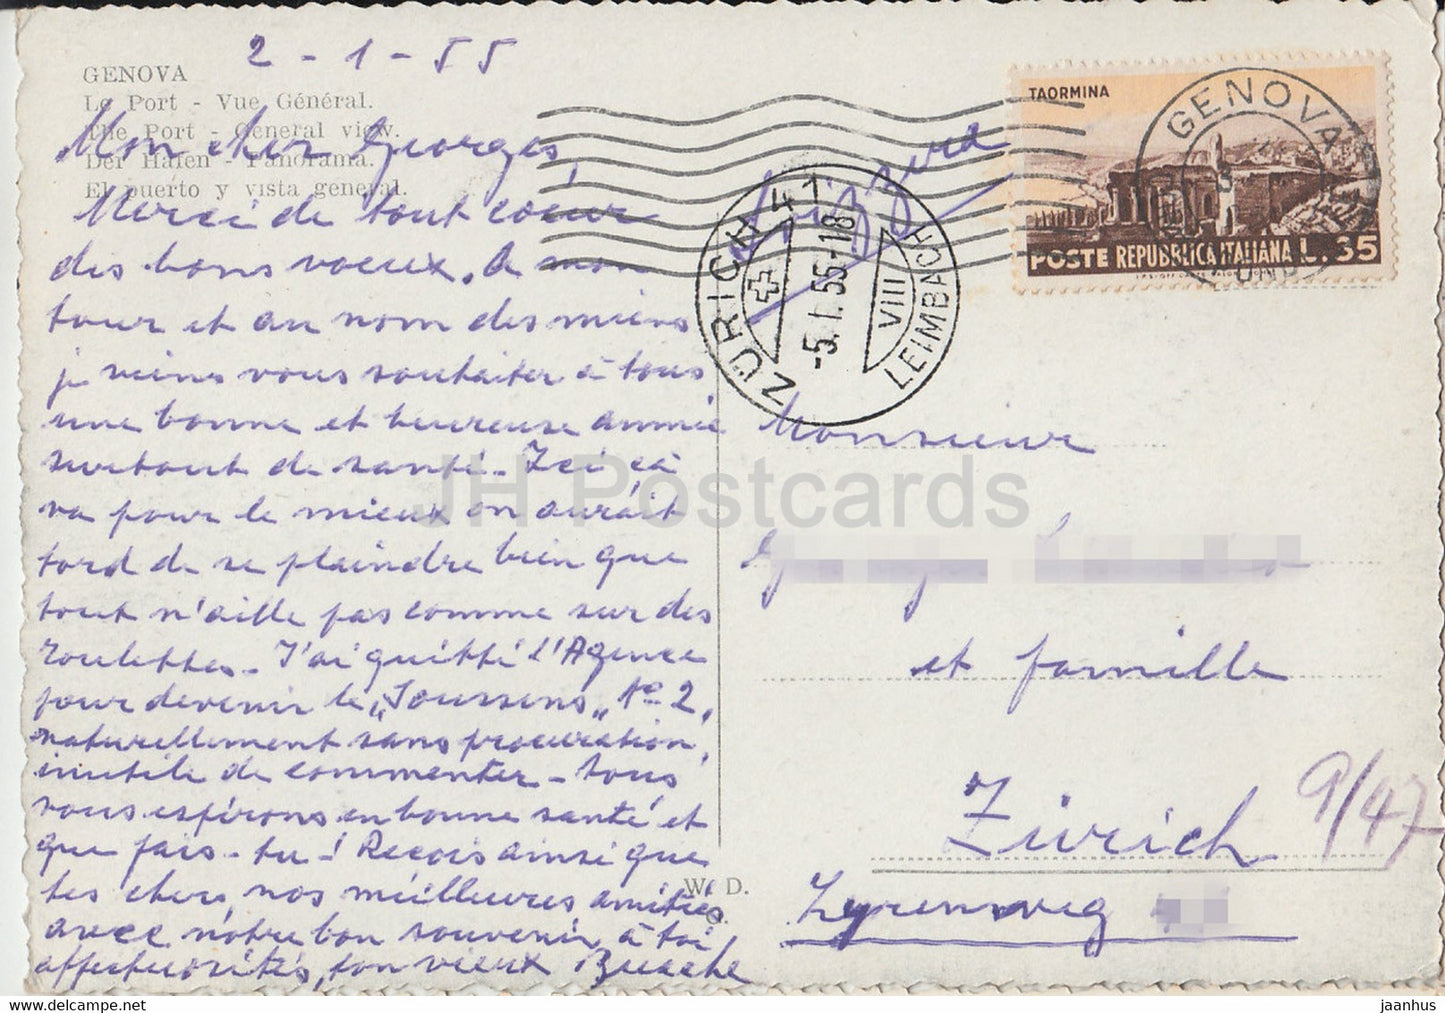 Genova - Genoa - Veduta del Porto - port - ship - old postcard - 1955 - Italy - used